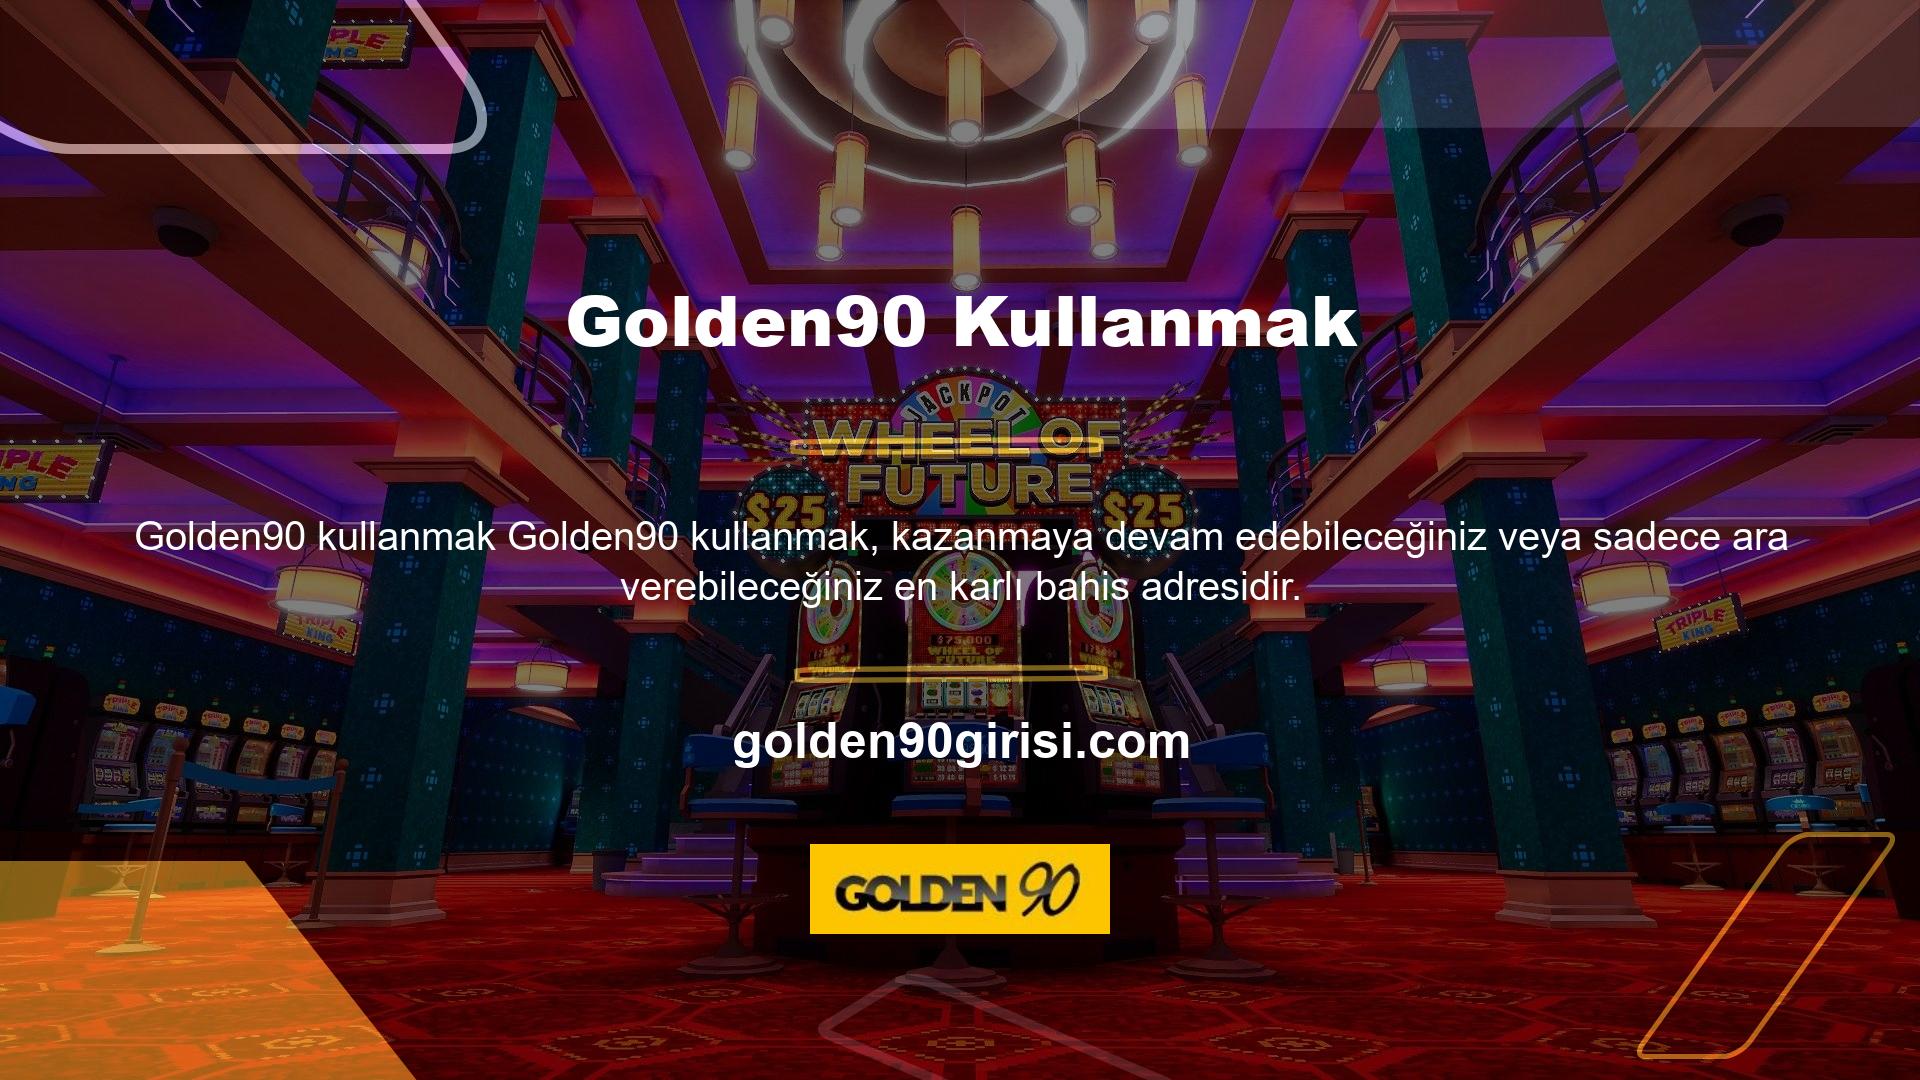 Türkiye'nin en büyük casino sitelerinden biri olan Golden90, internetteki yüksek oyun hızlarıyla kullanıcıların beğenisini kazanmaya devam ediyor